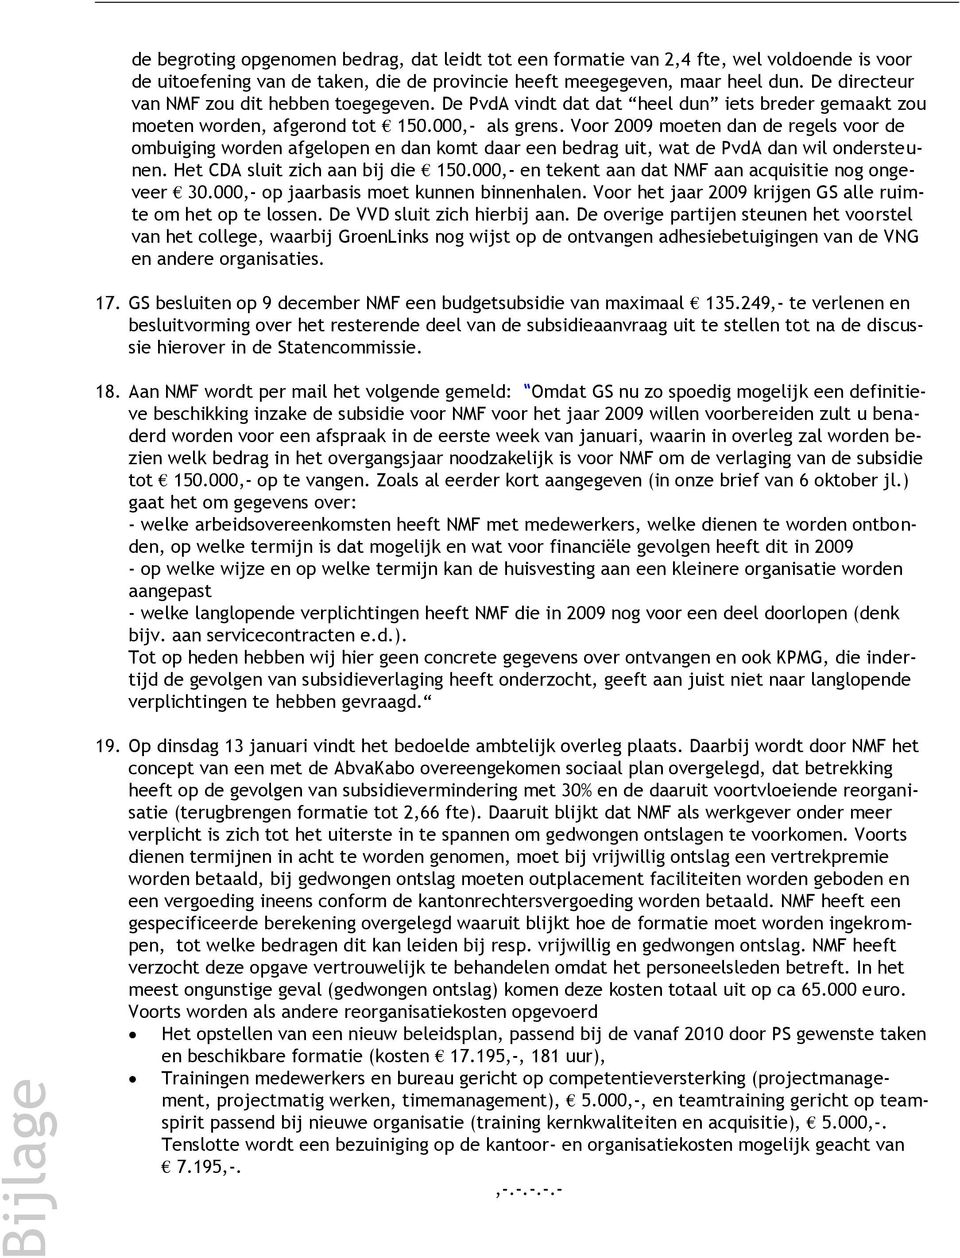 Voor 2009 moeten dan de regels voor de ombuiging worden afgelopen en dan komt daar een bedrag uit, wat de PvdA dan wil ondersteunen. Het CDA sluit zich aan bij die 150.